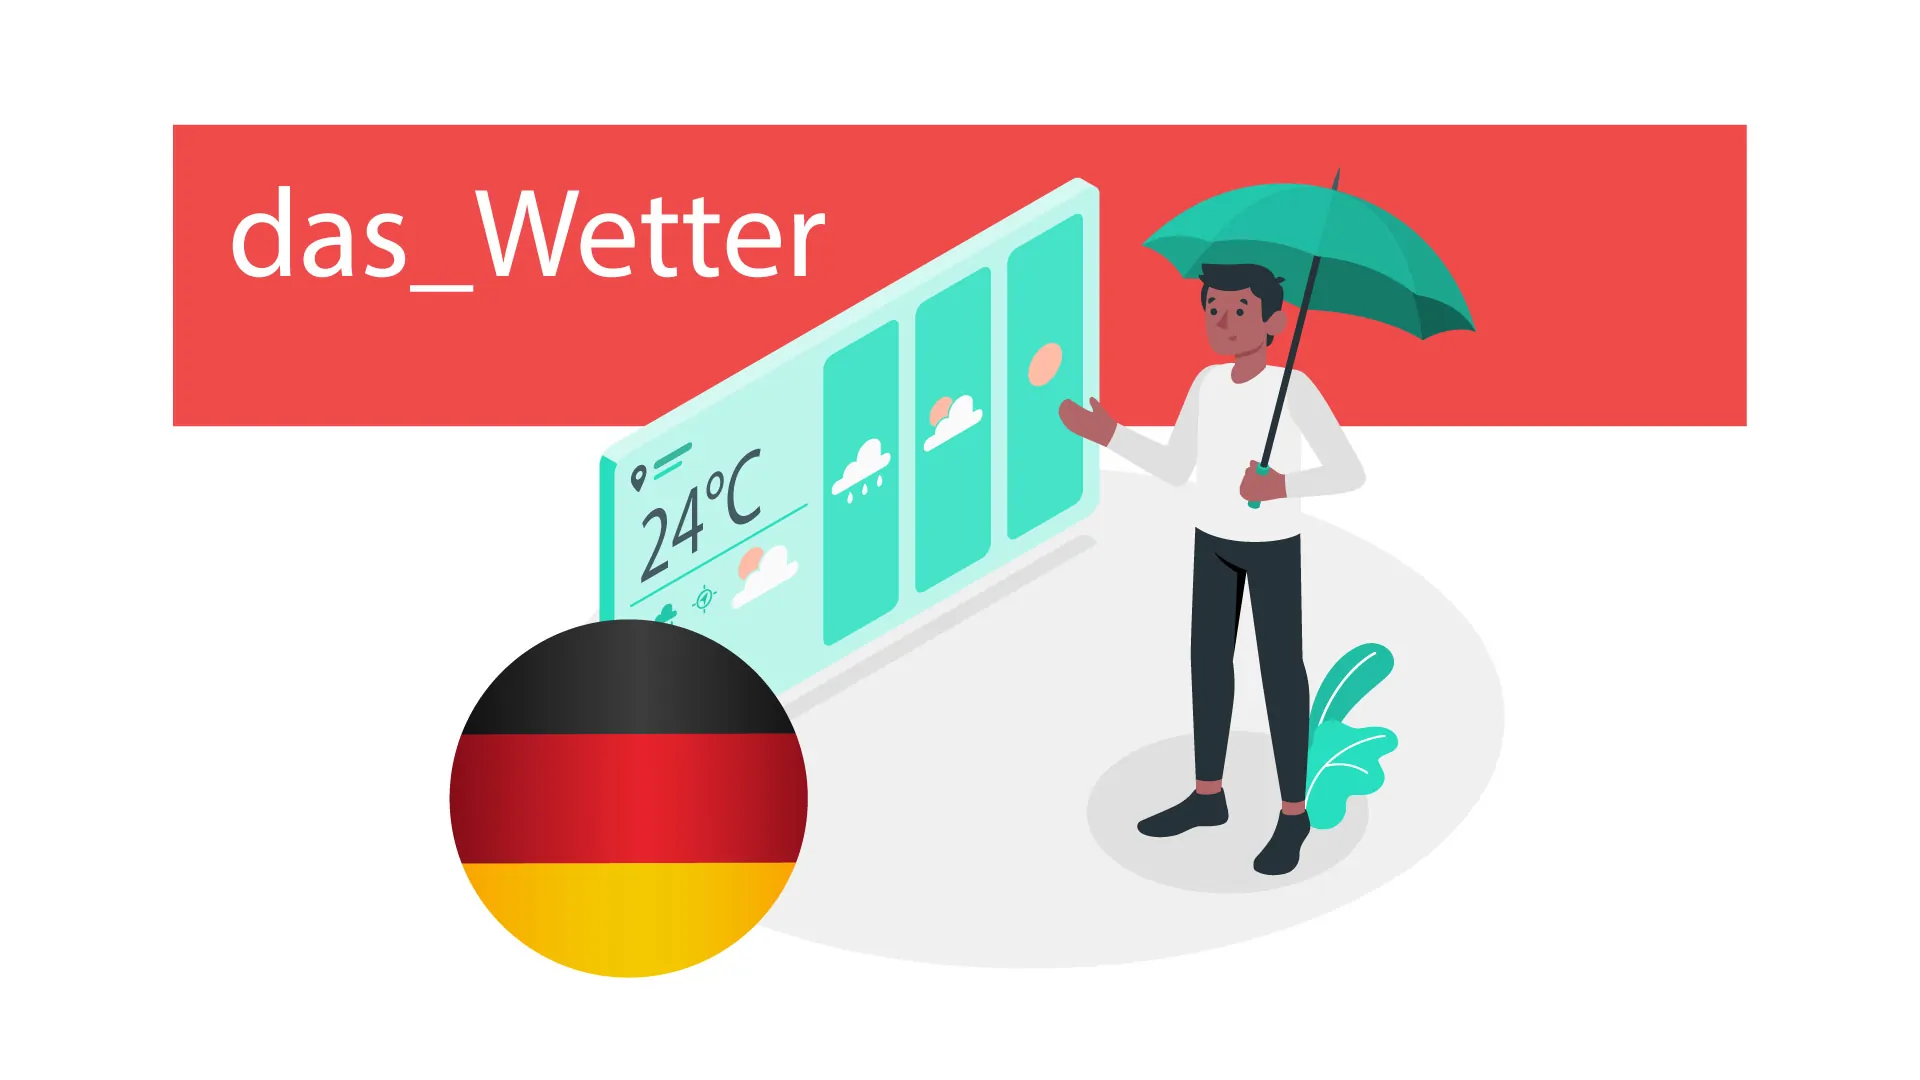 آب و هوا در زبان آلمانی  — آموزک [ویدیوی آموزشی]